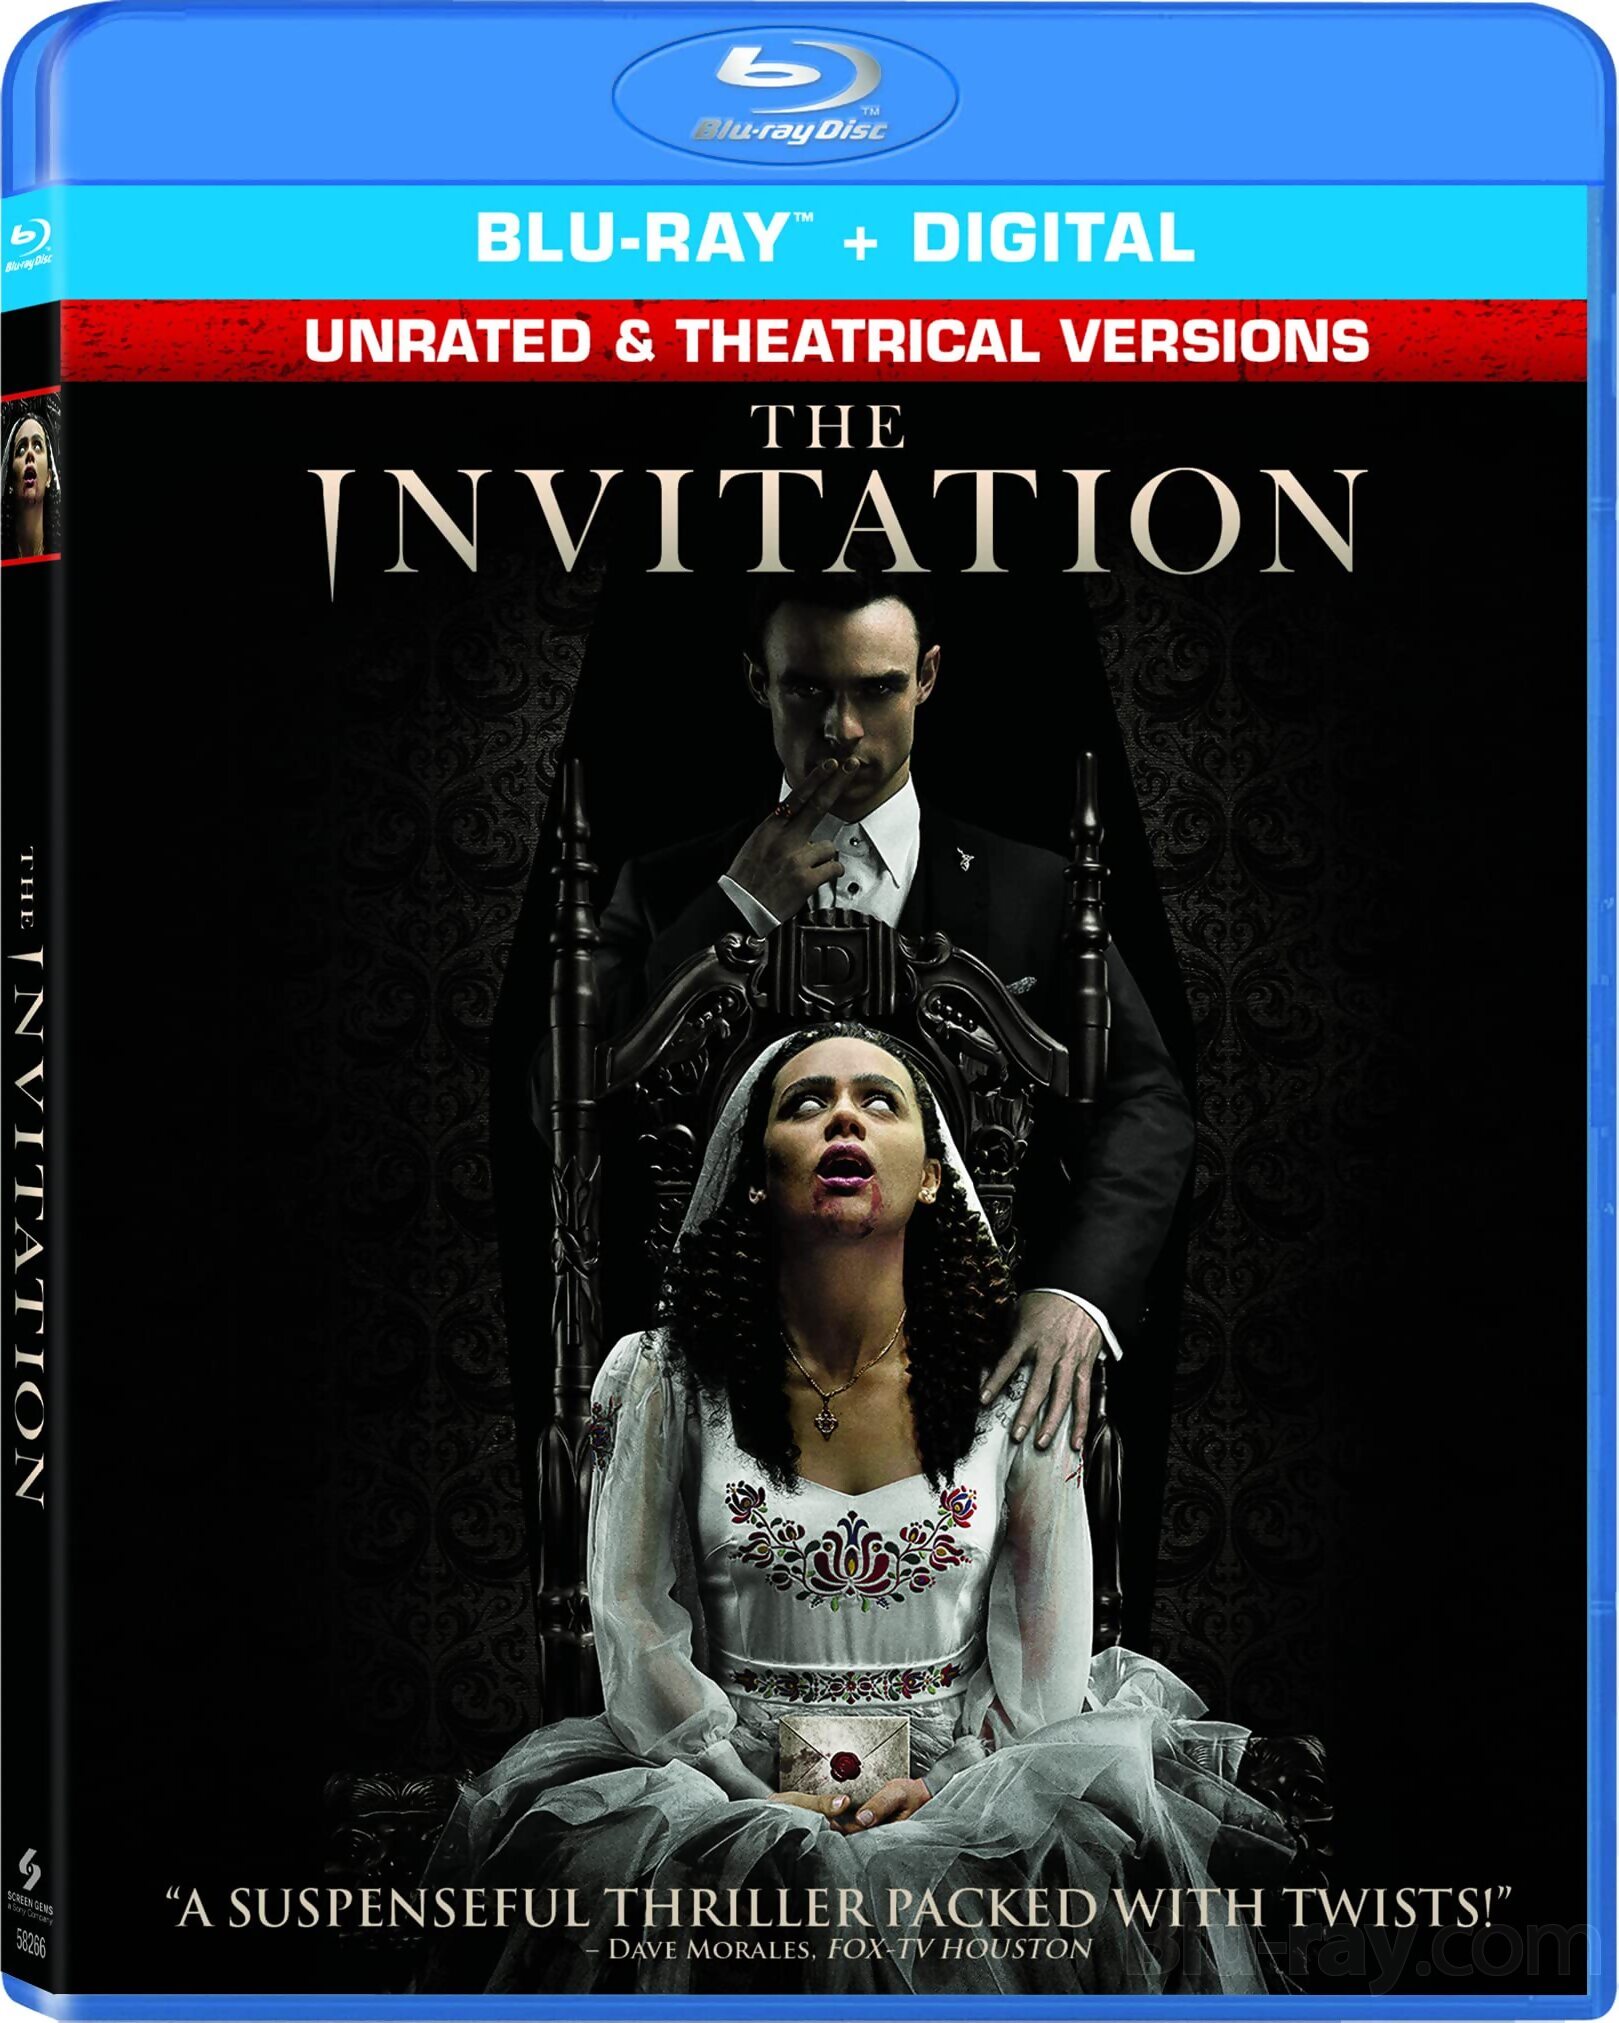 The Invitation (2022) New Hollywood Hindi Movie ORG [Hindi – English] BluRay 1080p, 720p & 480p Download